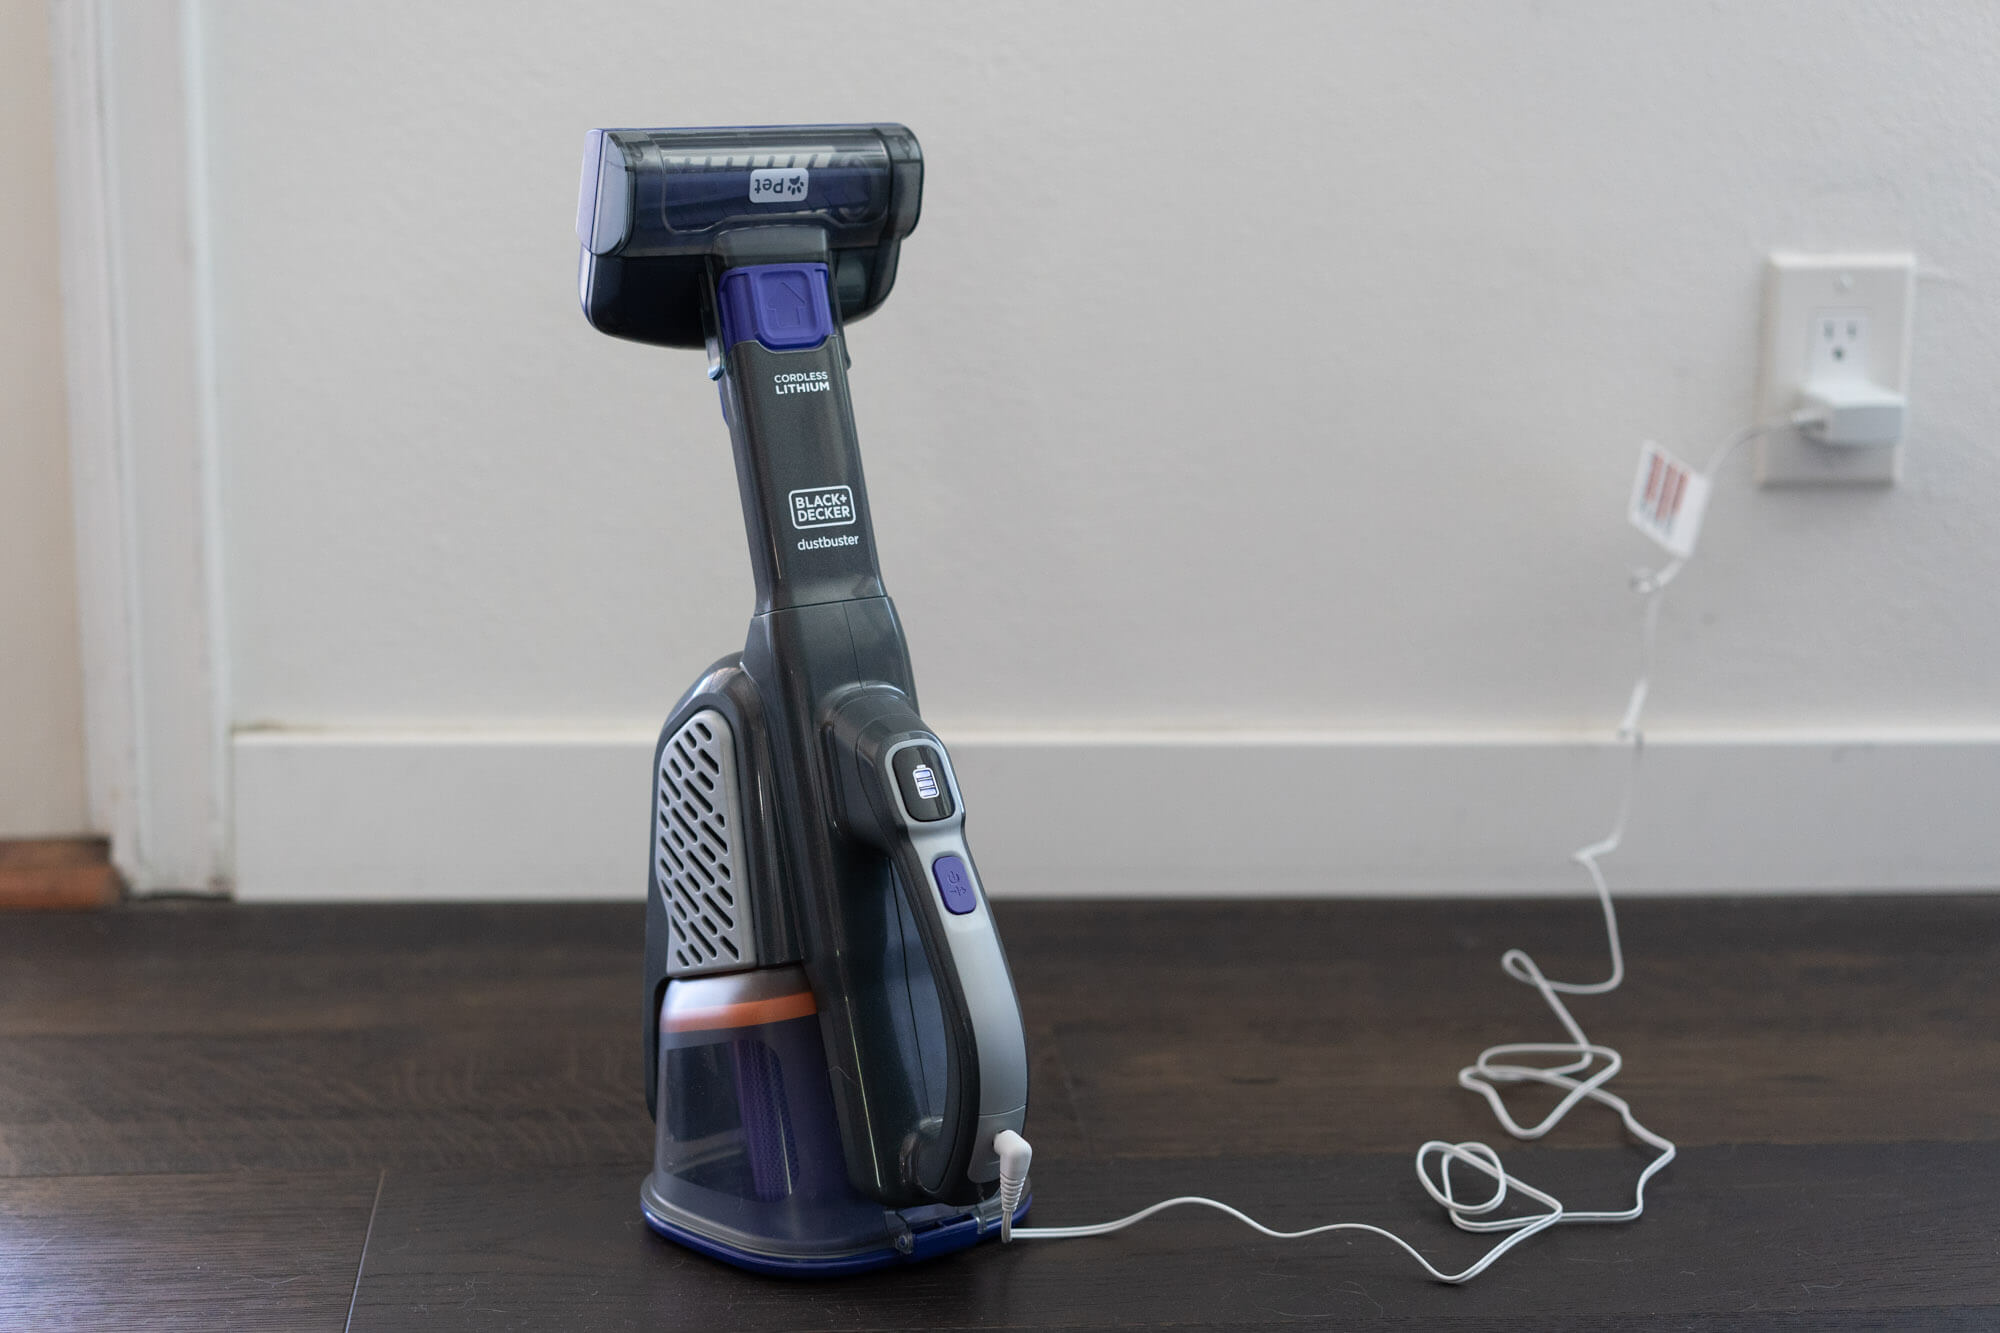  BLACK+DECKER Furbuster Handheld Vacuum for Pets